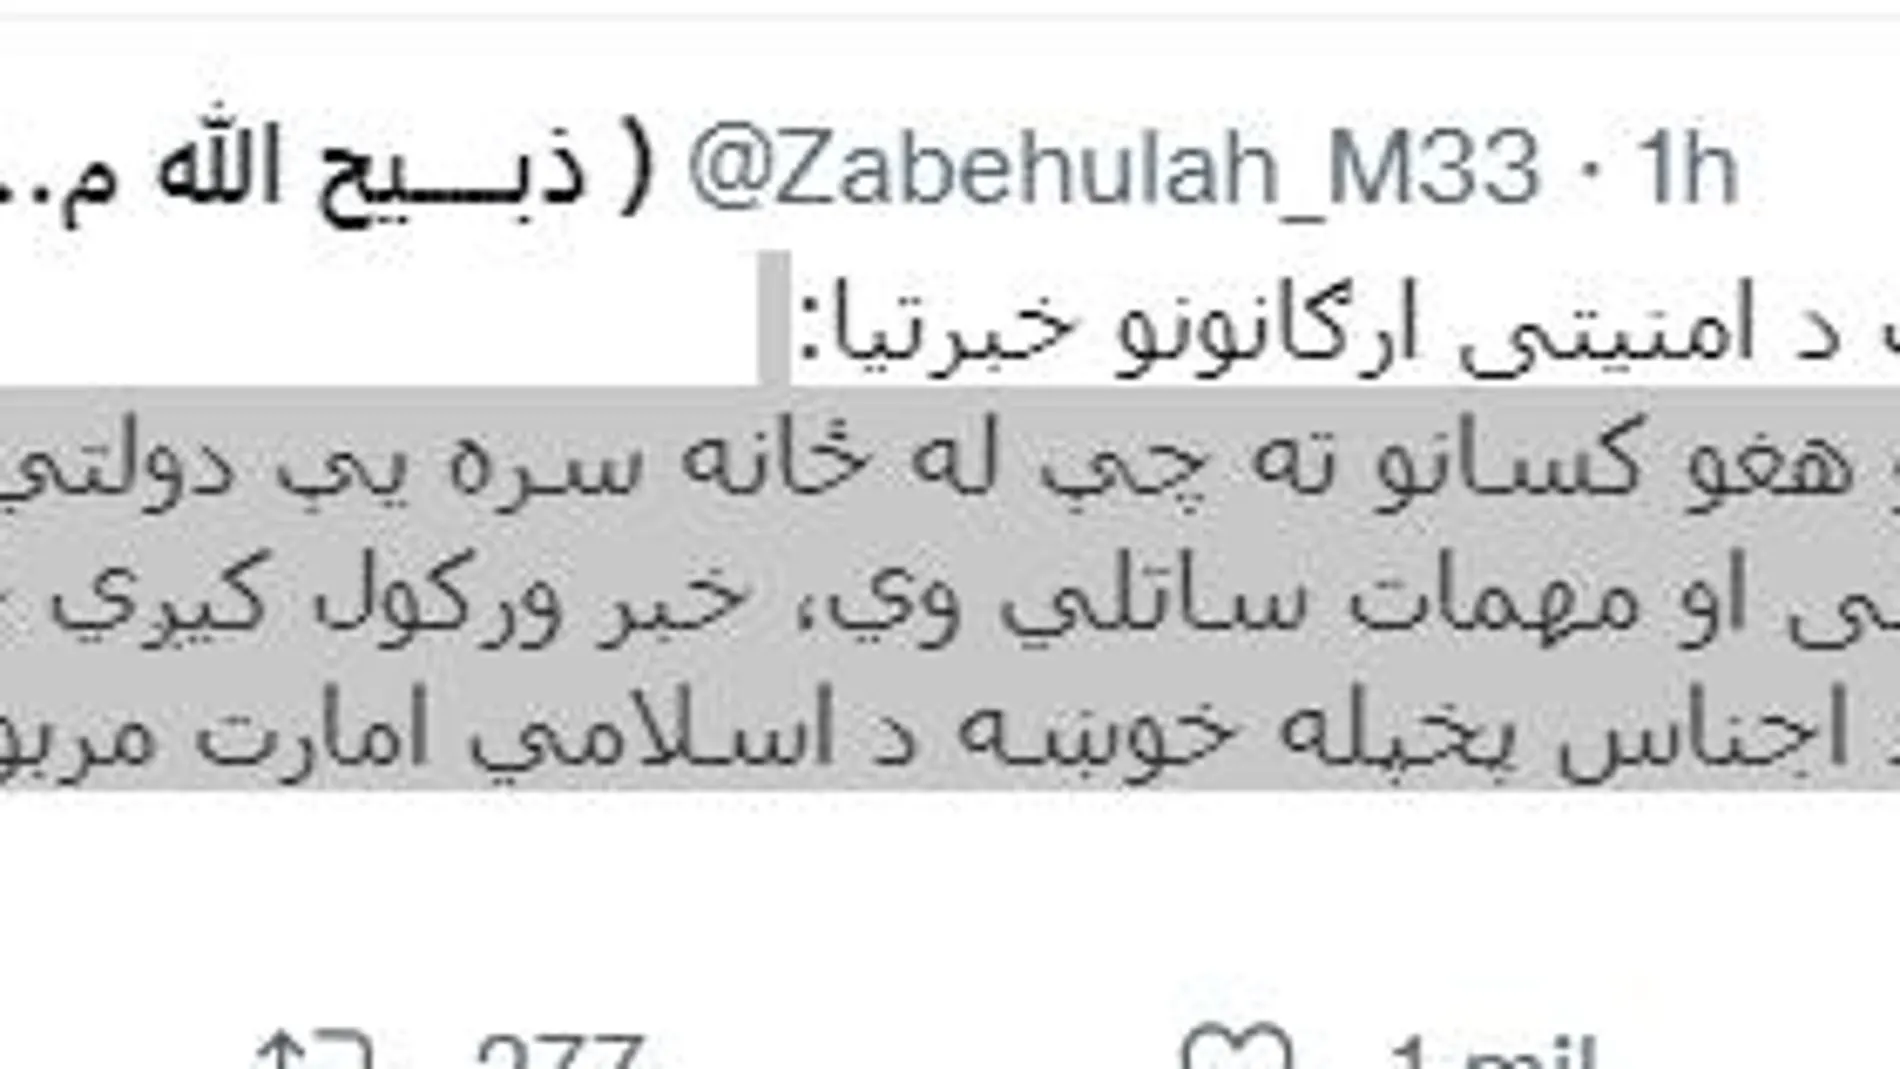 Tweet publicado por el portavoz talibán en el pide la entrega de las armas y los vehículos